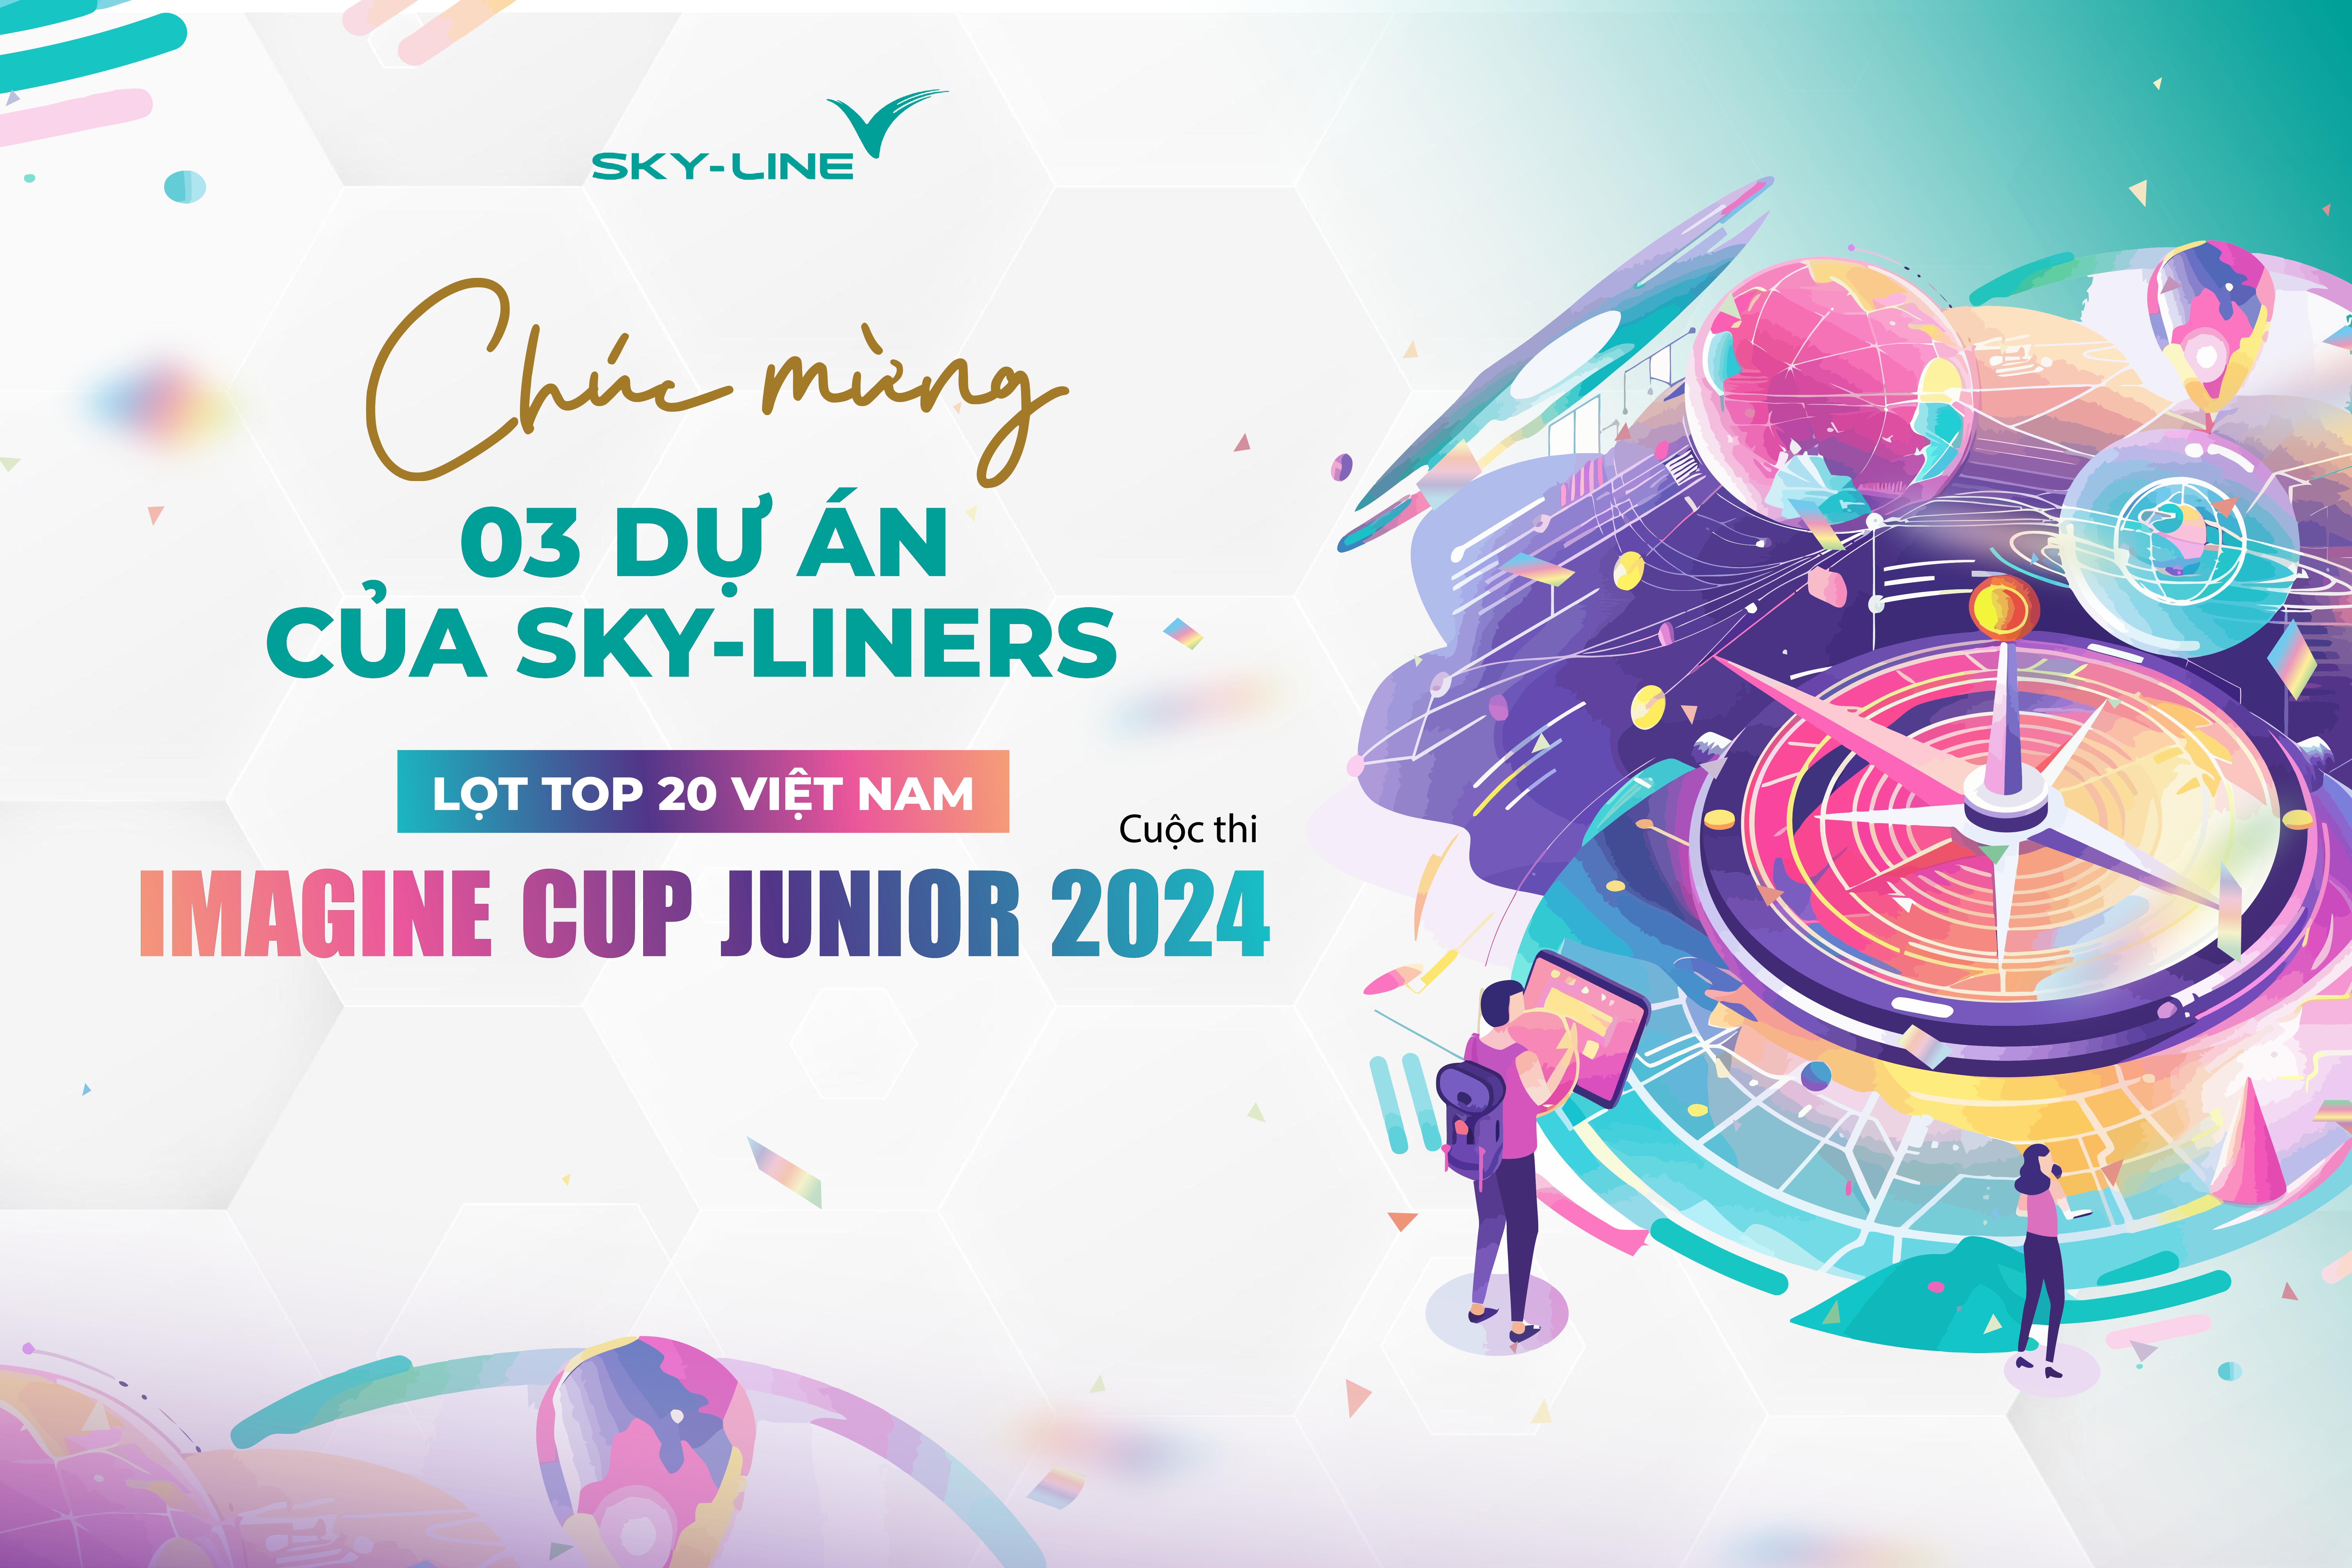 CHÚC MỪNG 03 DỰ ÁN CỦA SKY-LINERS LỌT TOP 20 VIỆT NAM CUỘC THI IMAGINE CUP JUNIOR 2024